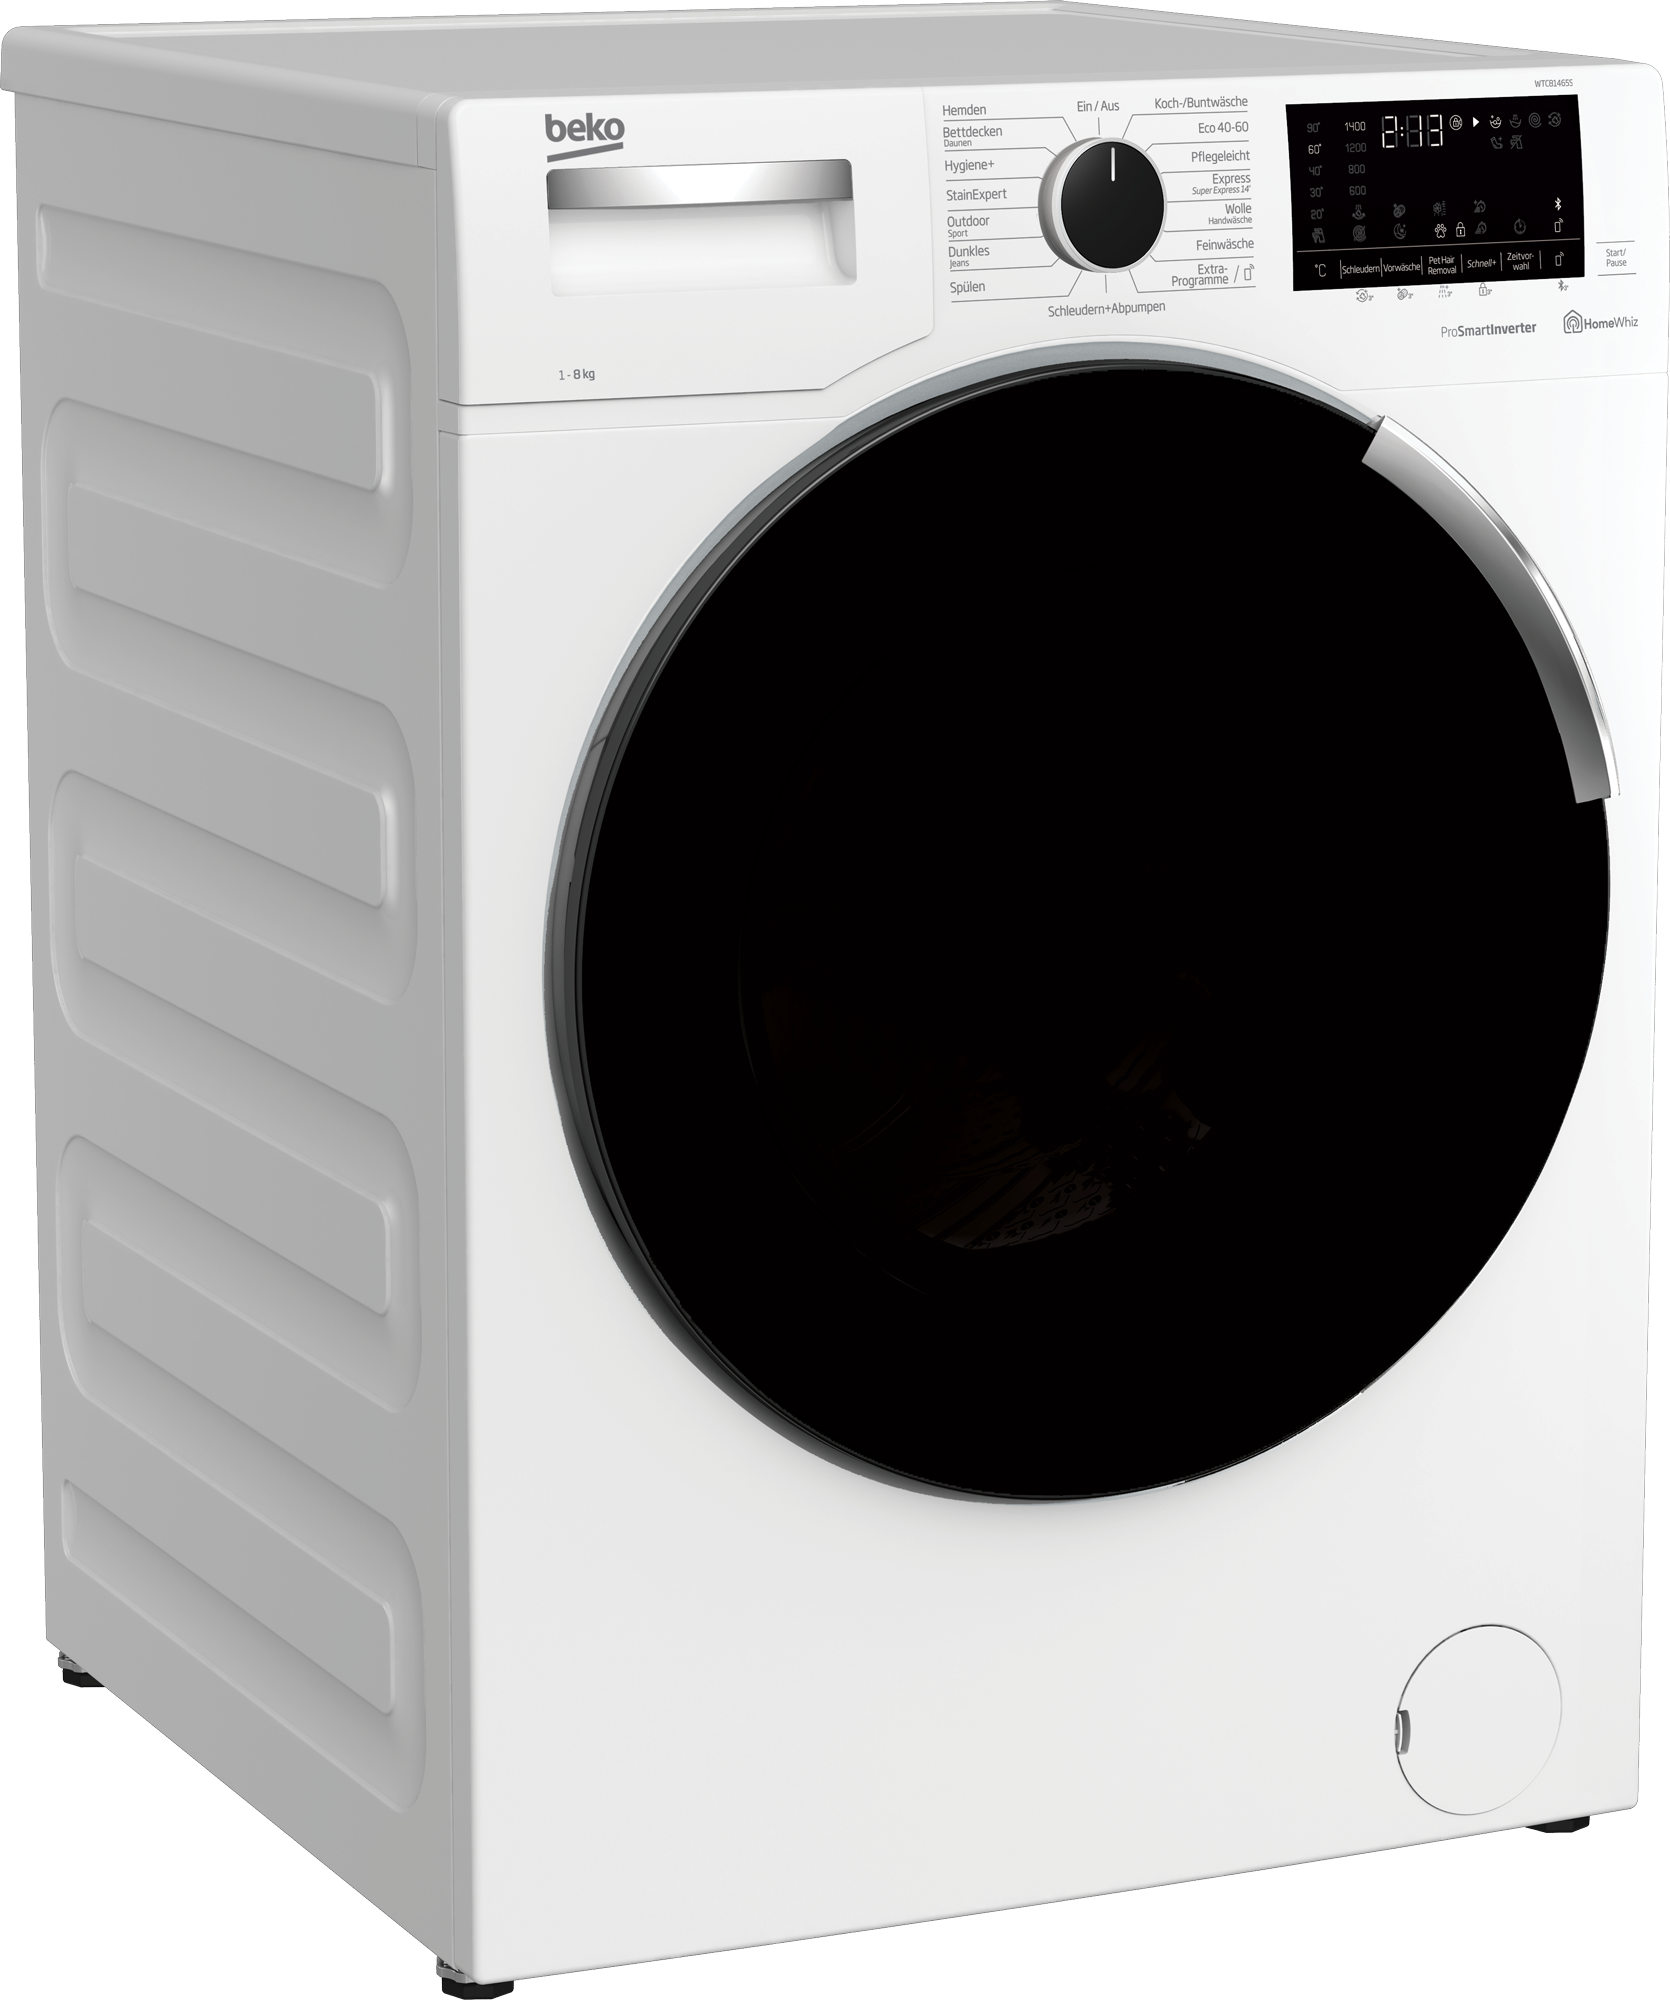 5kg schwarze Farbe Doppel wanne halbautomat ische Waschmaschine